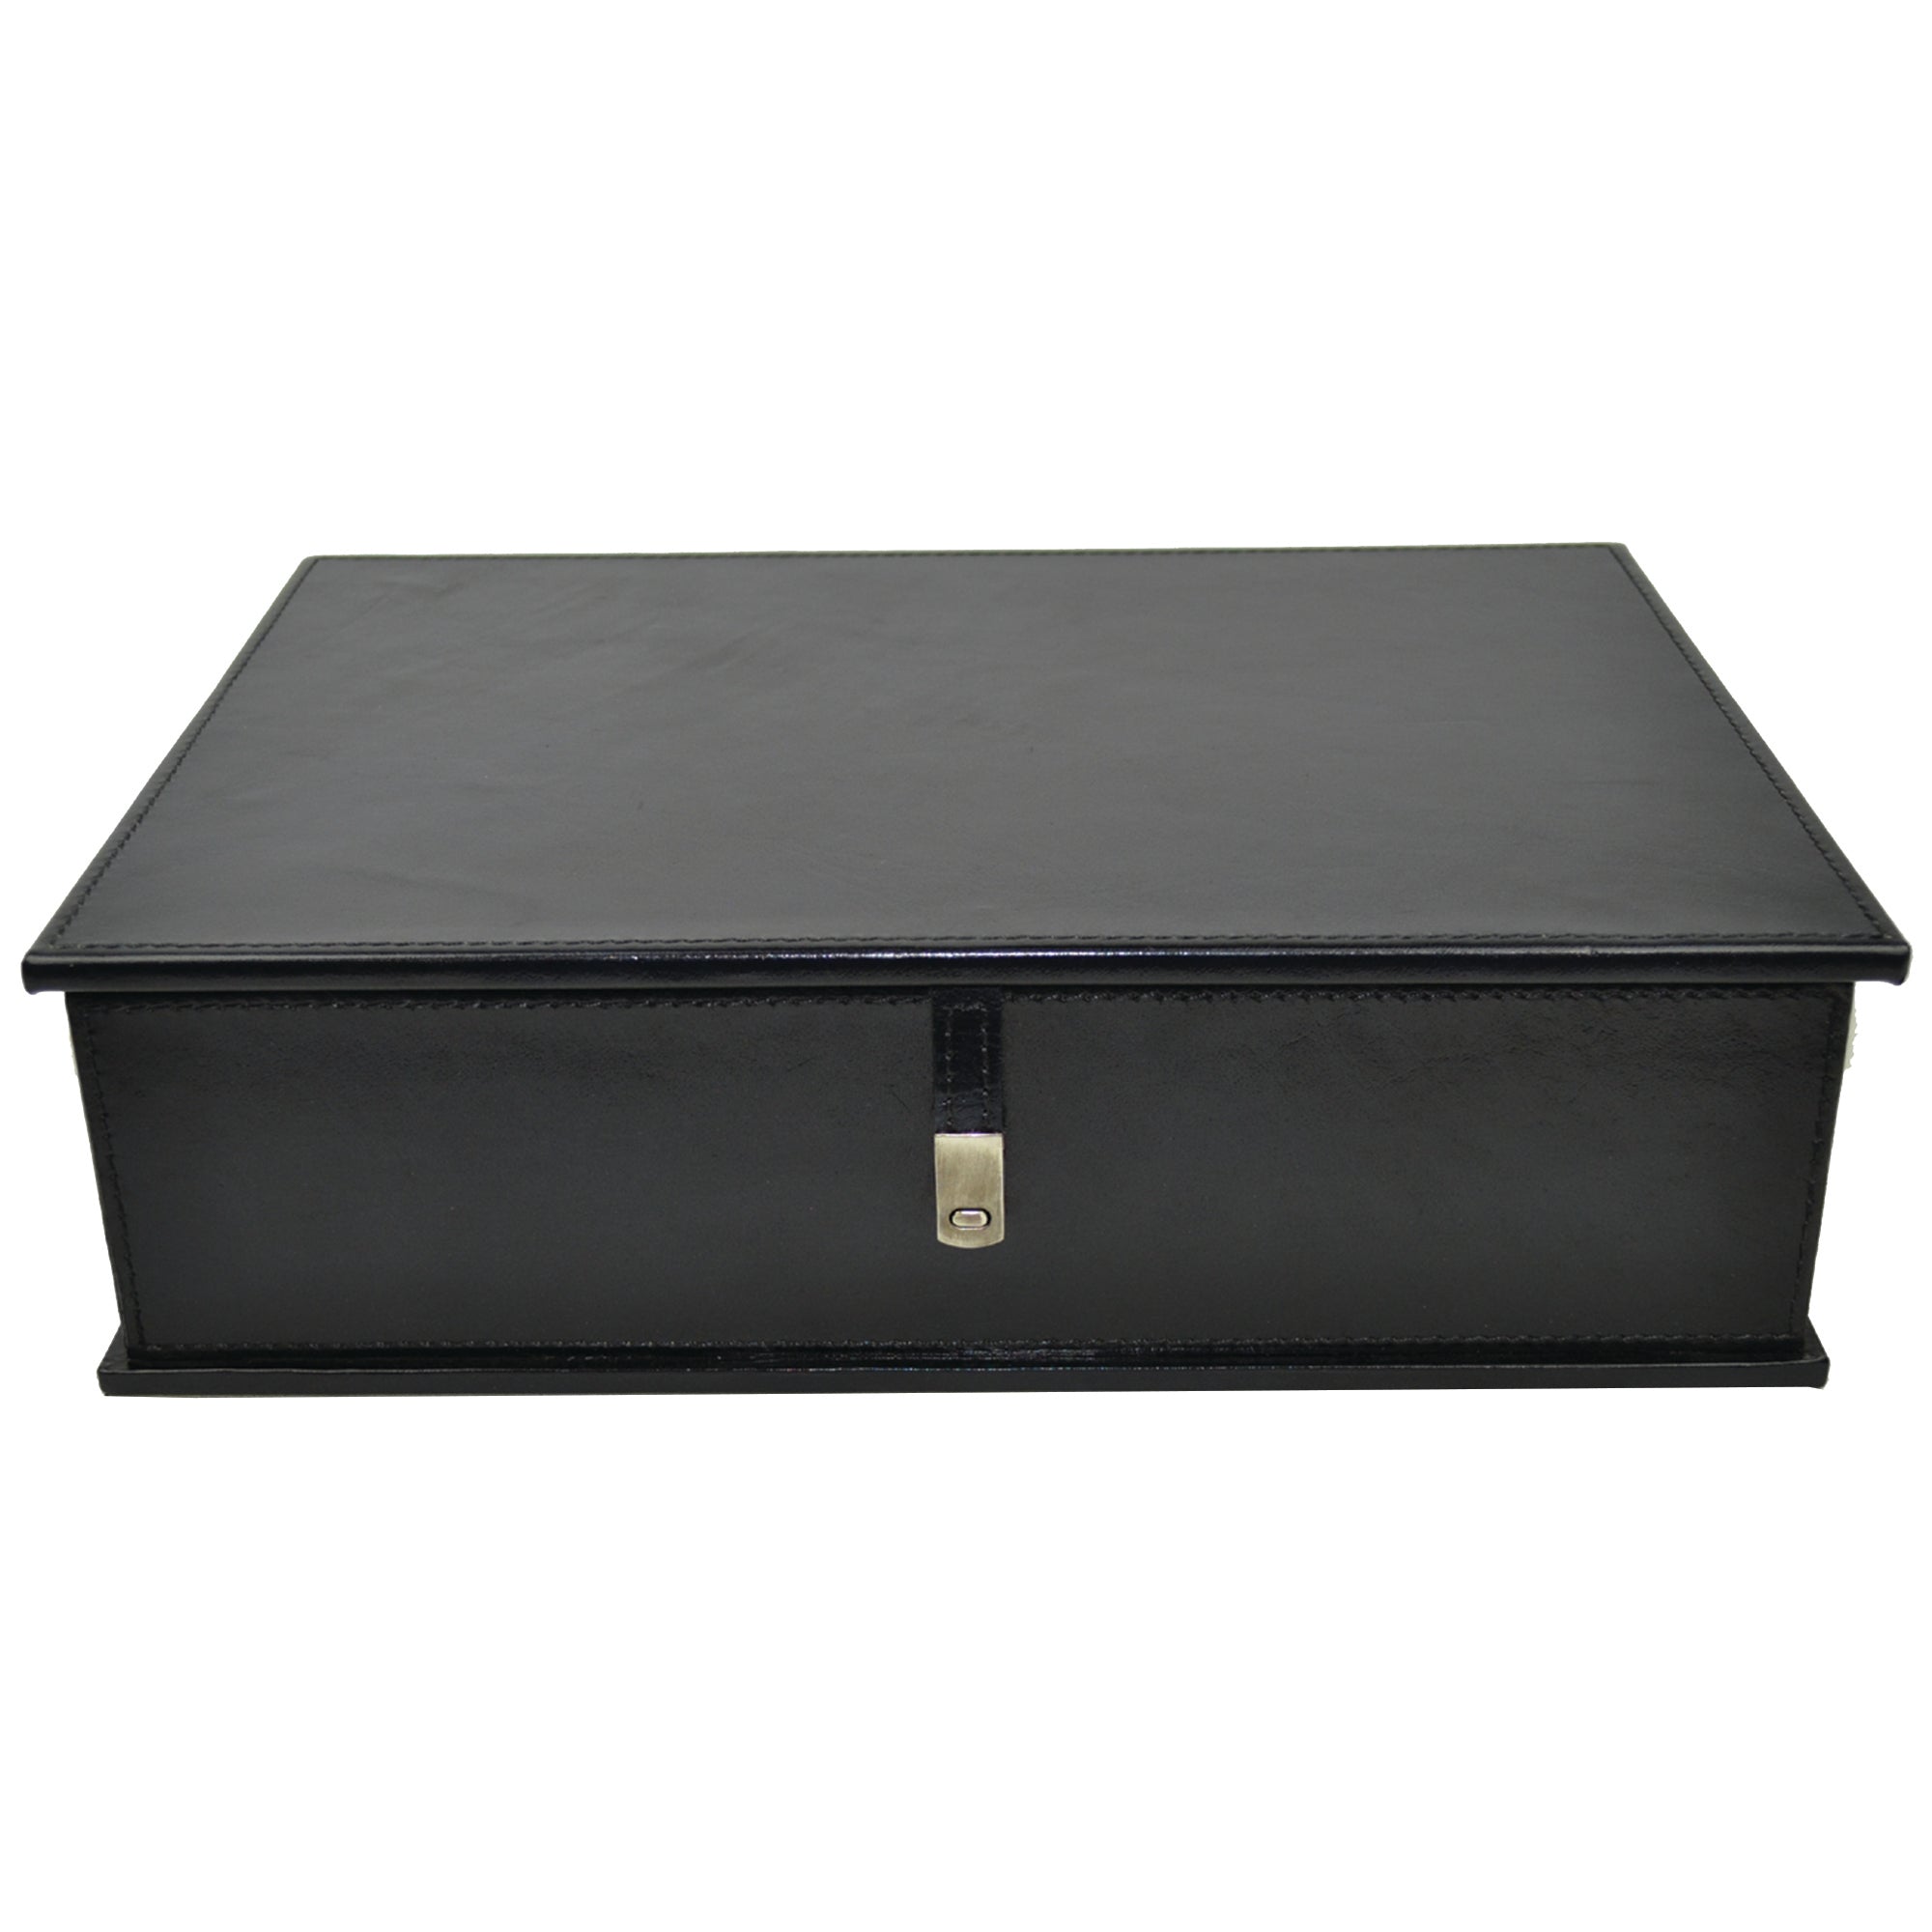 Pharom Black Leather Document Box - Notbrand